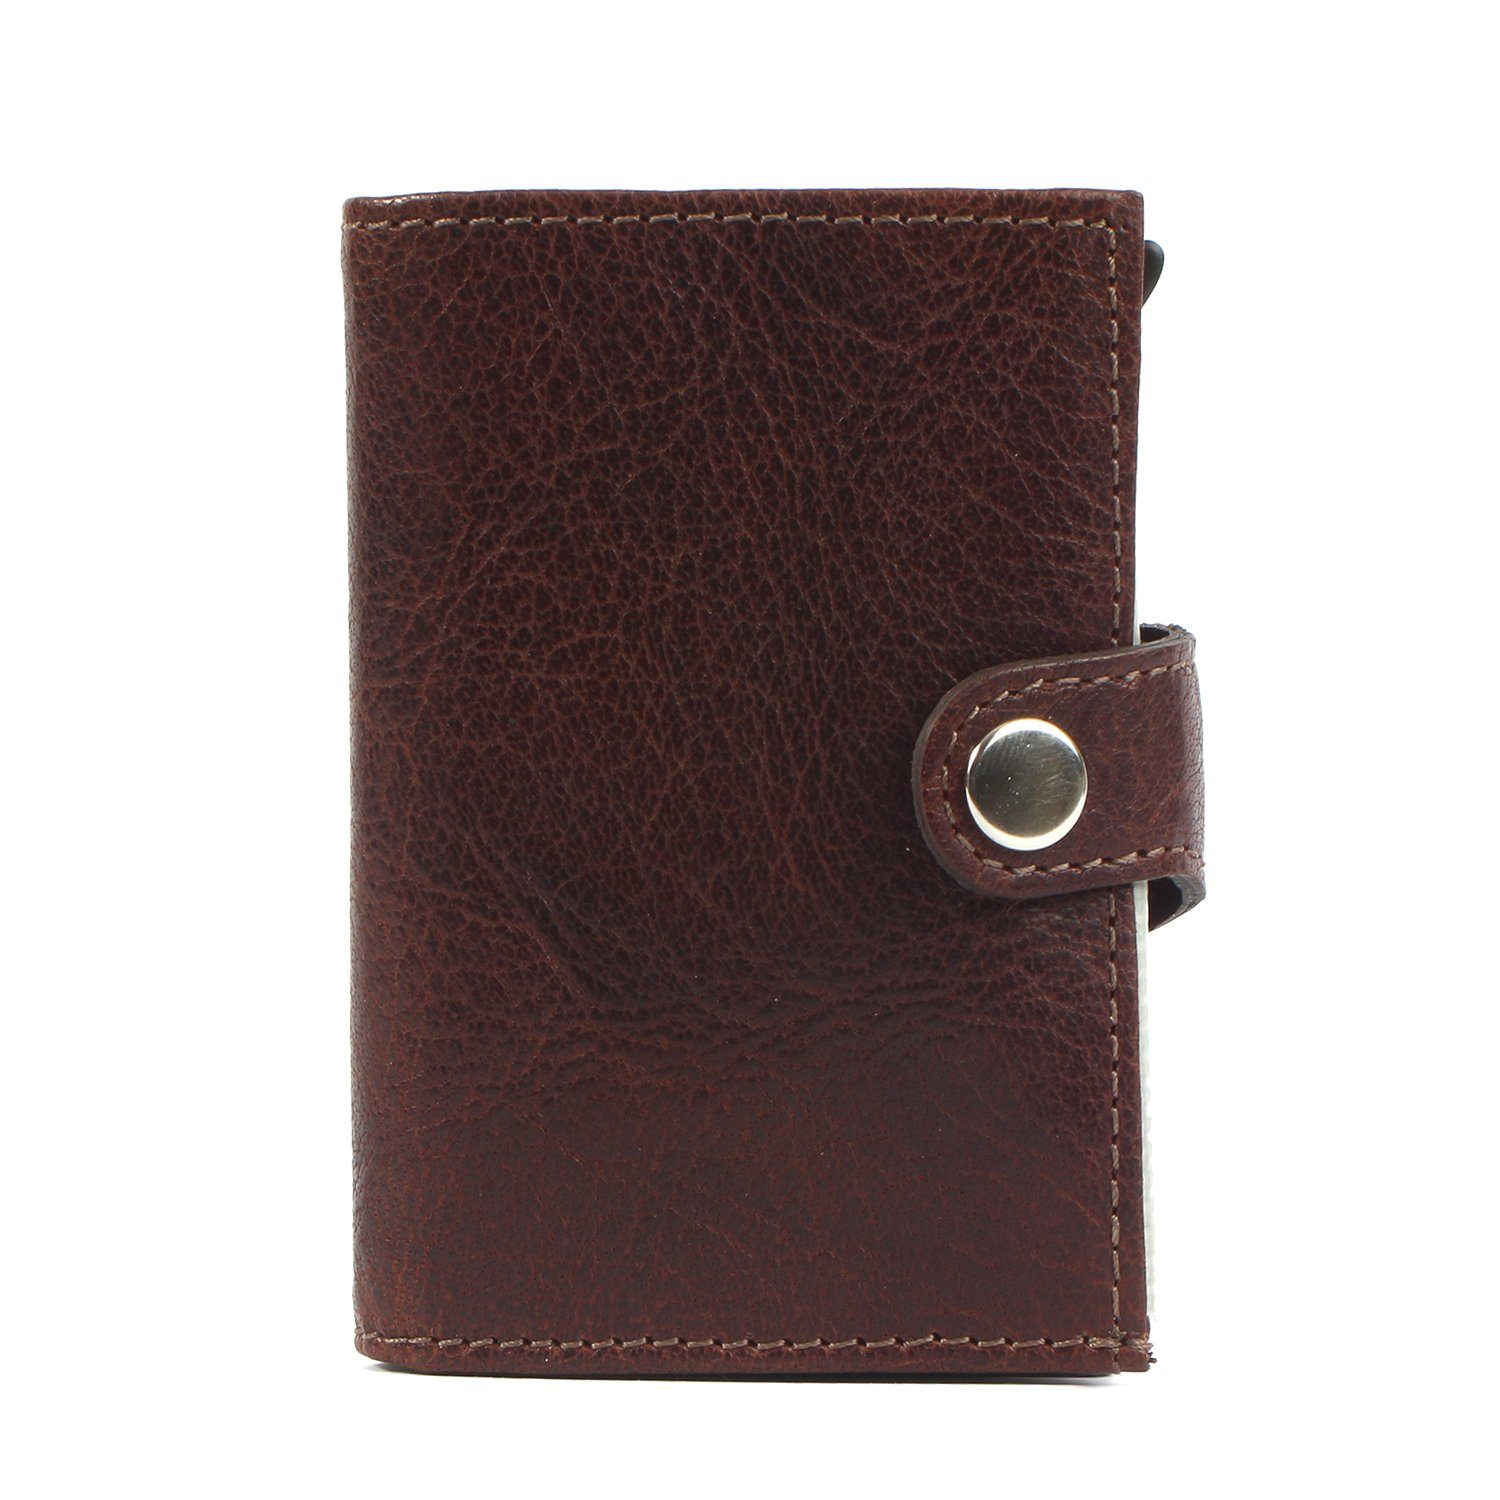 Margelisch Mini Geldbörse noonyu brown Upcycling single Leder leather, aus Kreditkartenbörse